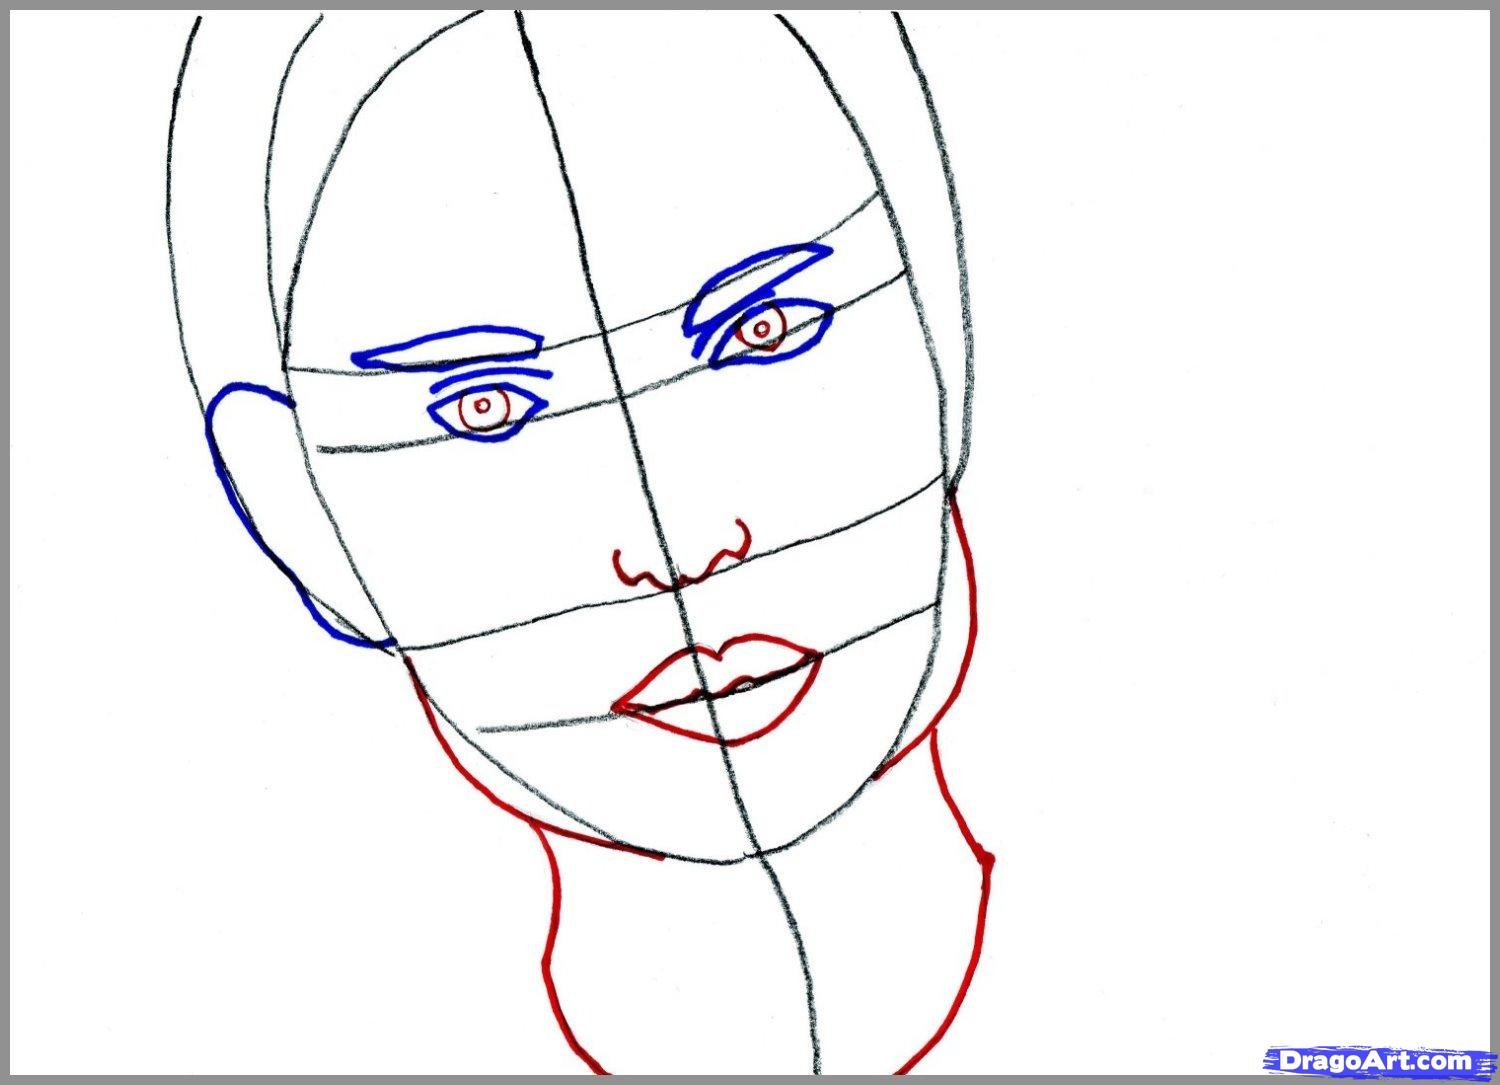 Нарисовать лицо человека